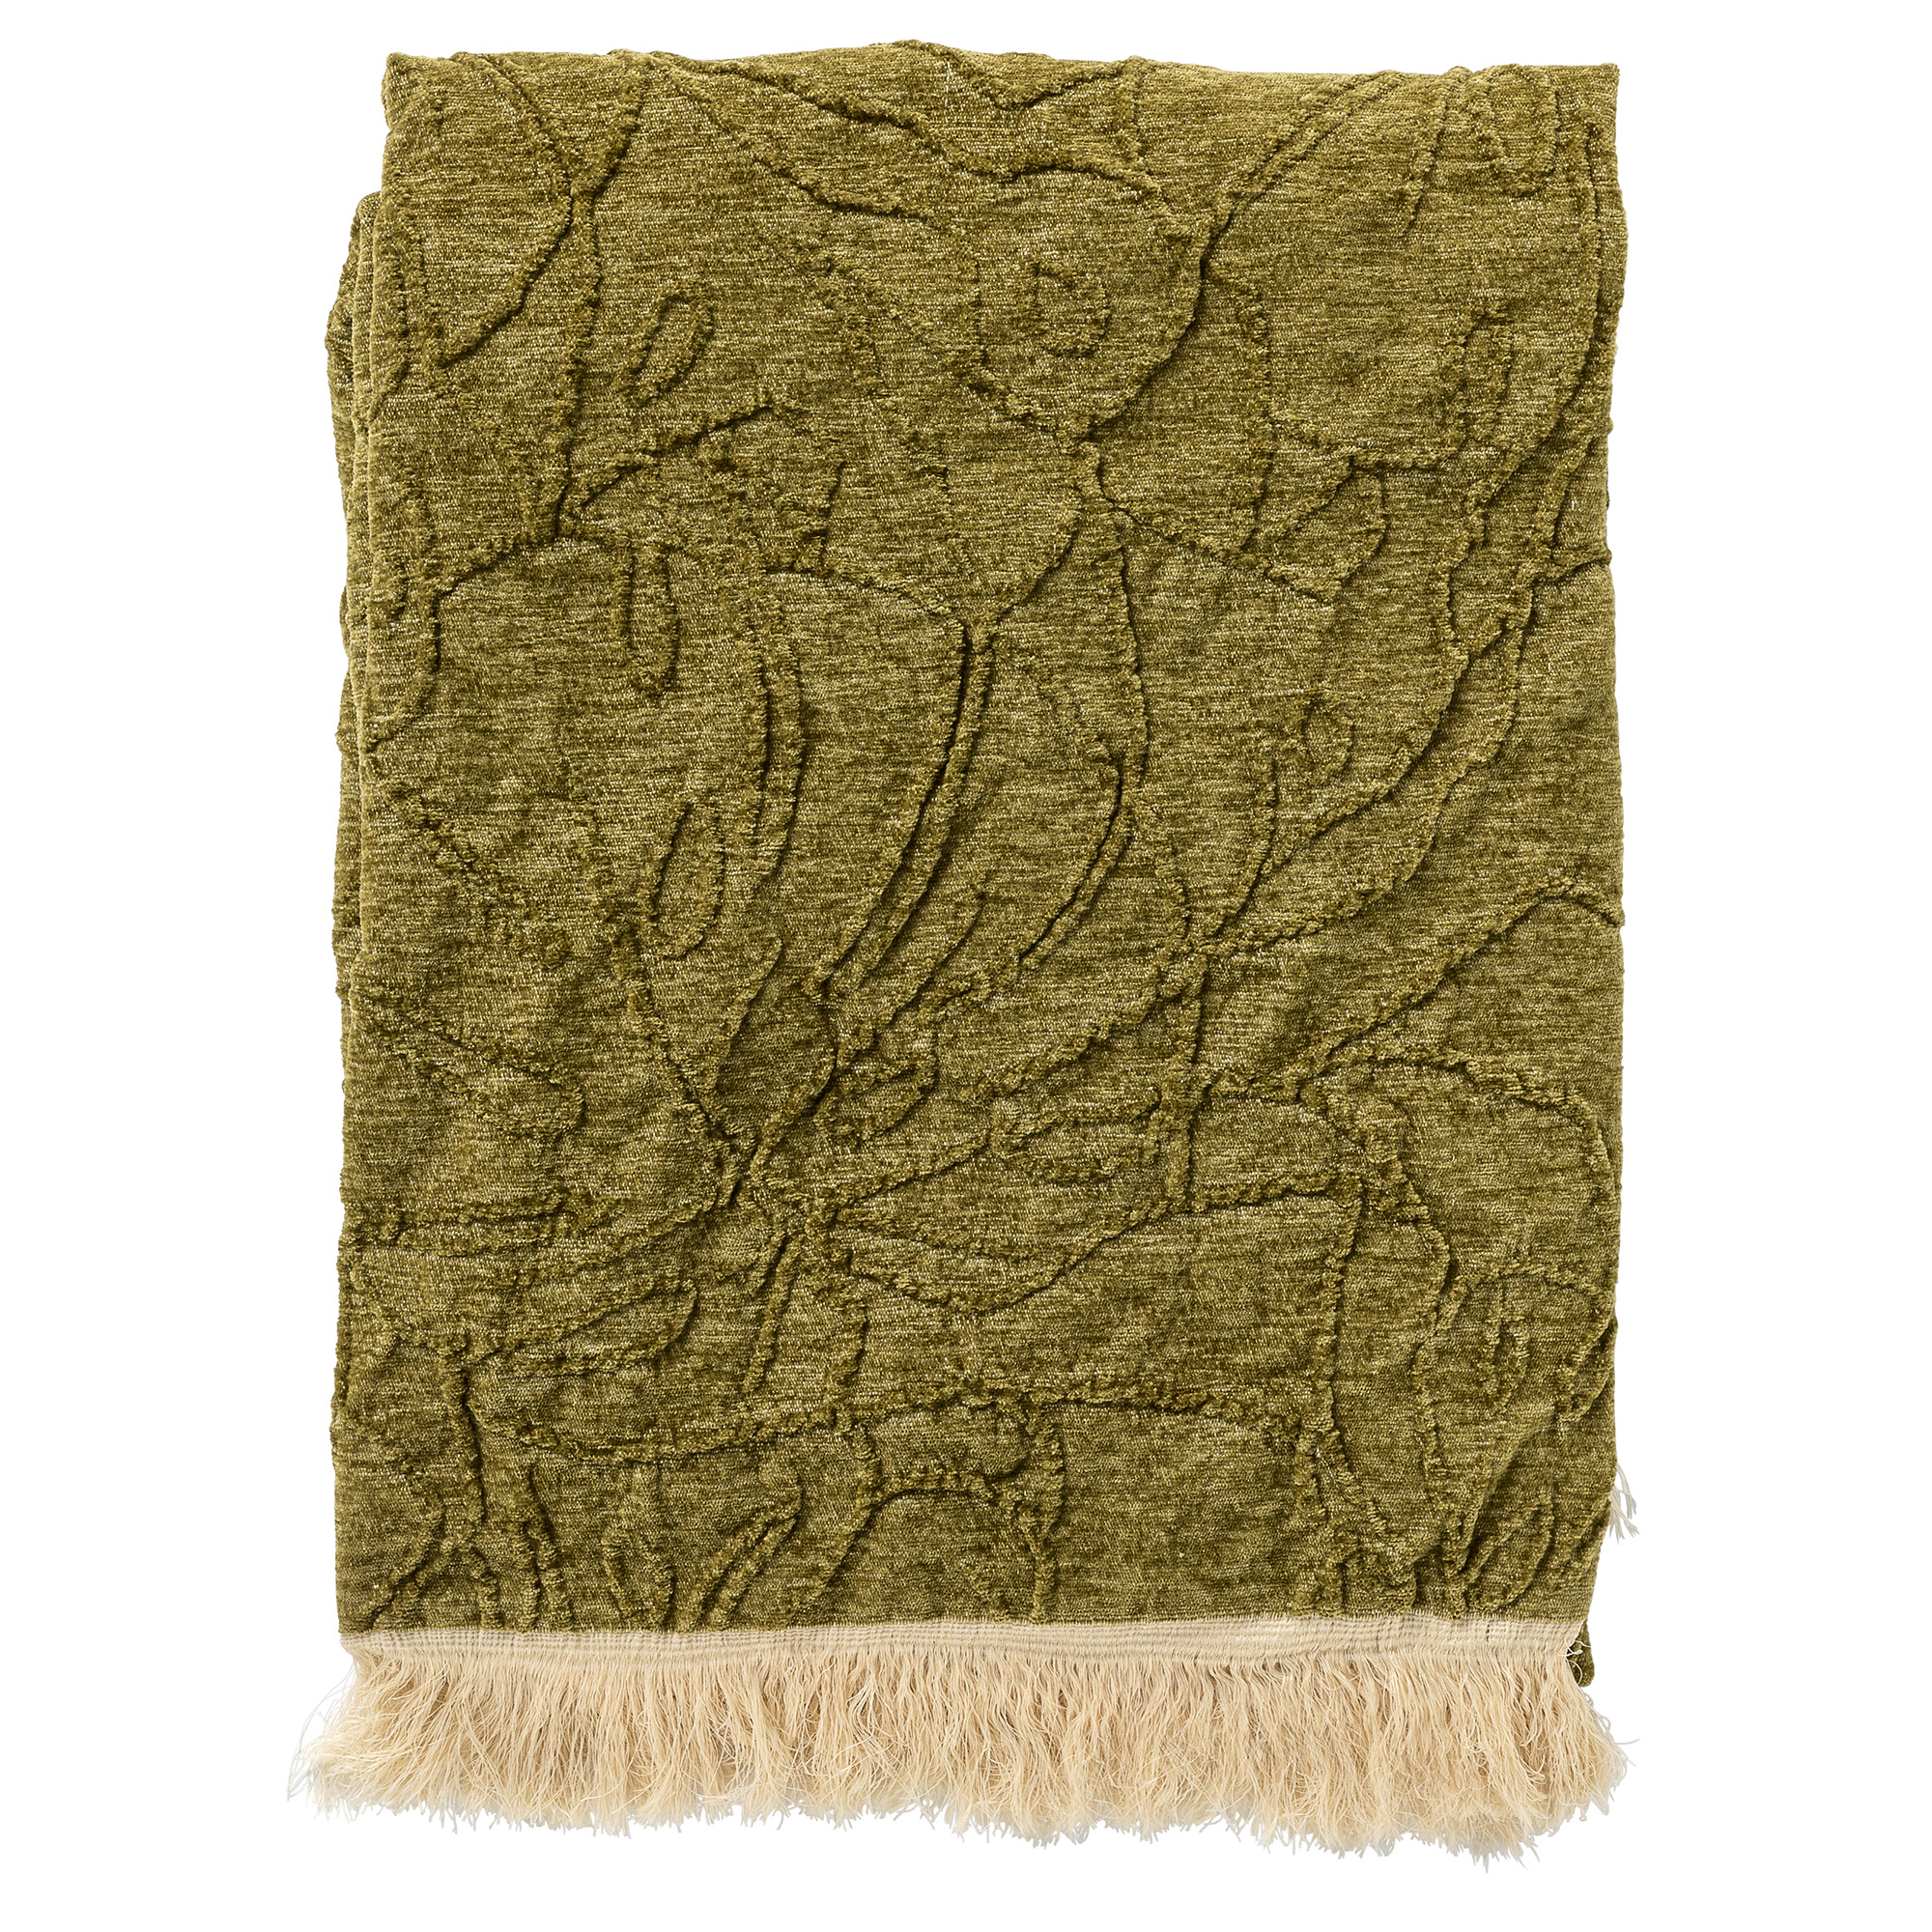 MAYBEL - Plaid 140x180 cm - met ingeweven patroon - effen kleur met franjes - Olive Branch - groen